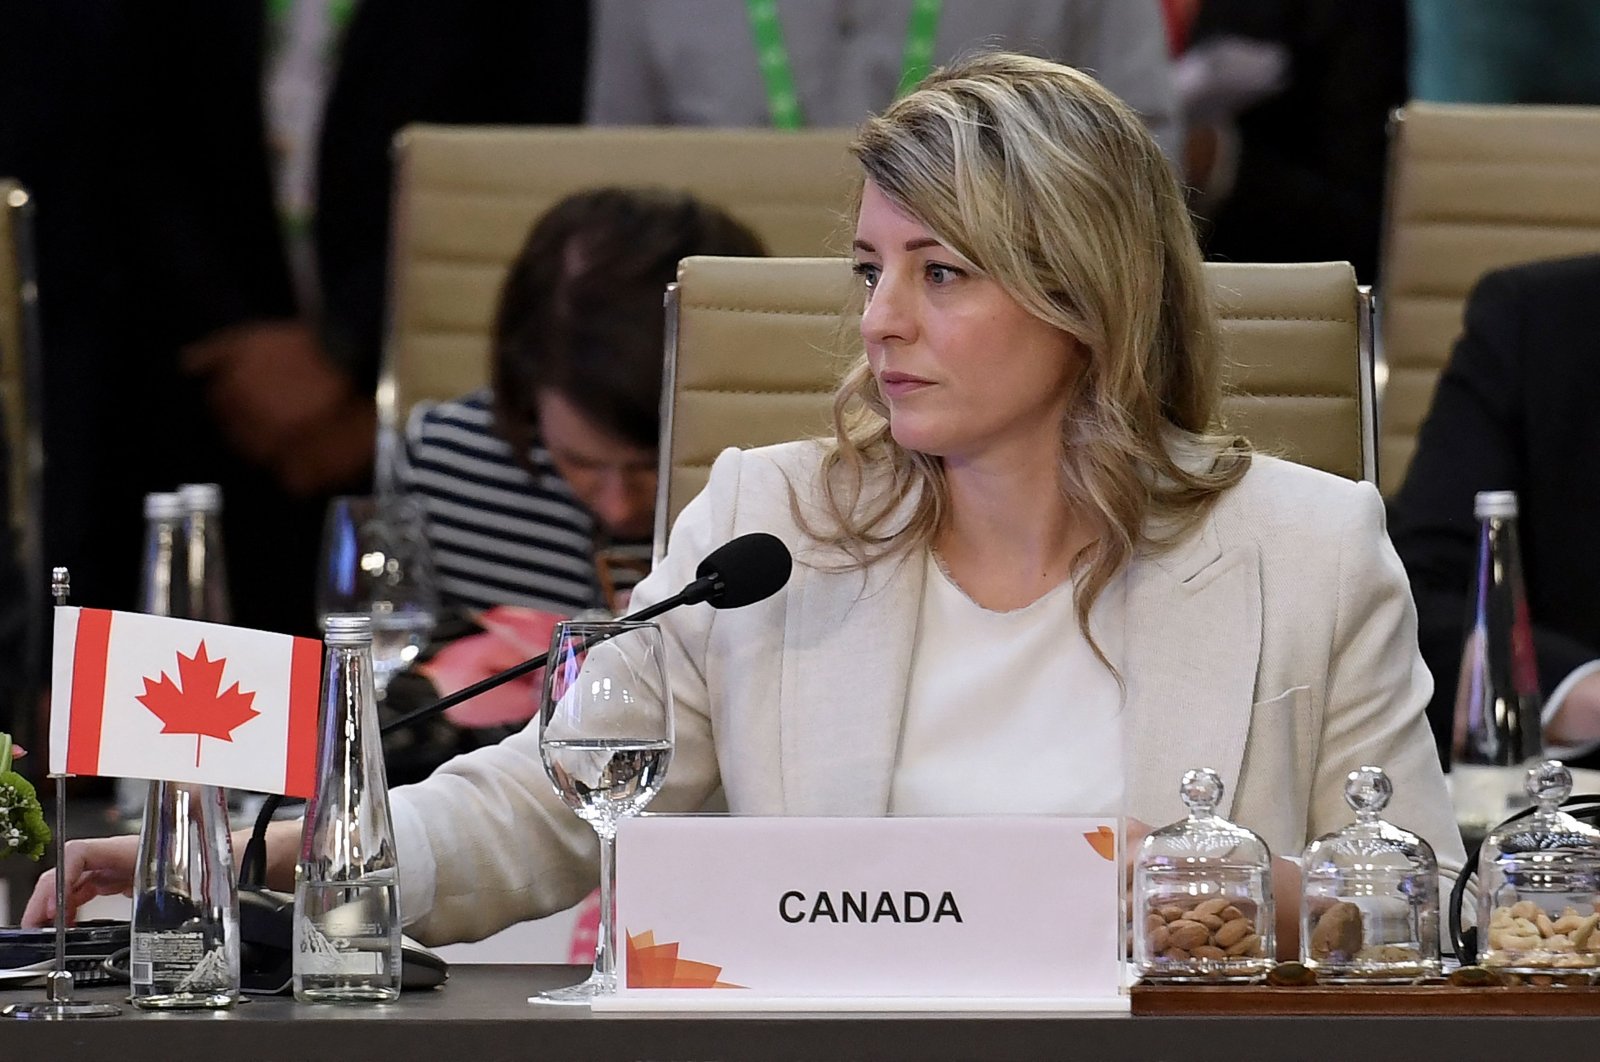 Kanada tidak akan mentolerir campur tangan dalam urusannya, kata FM kepada China